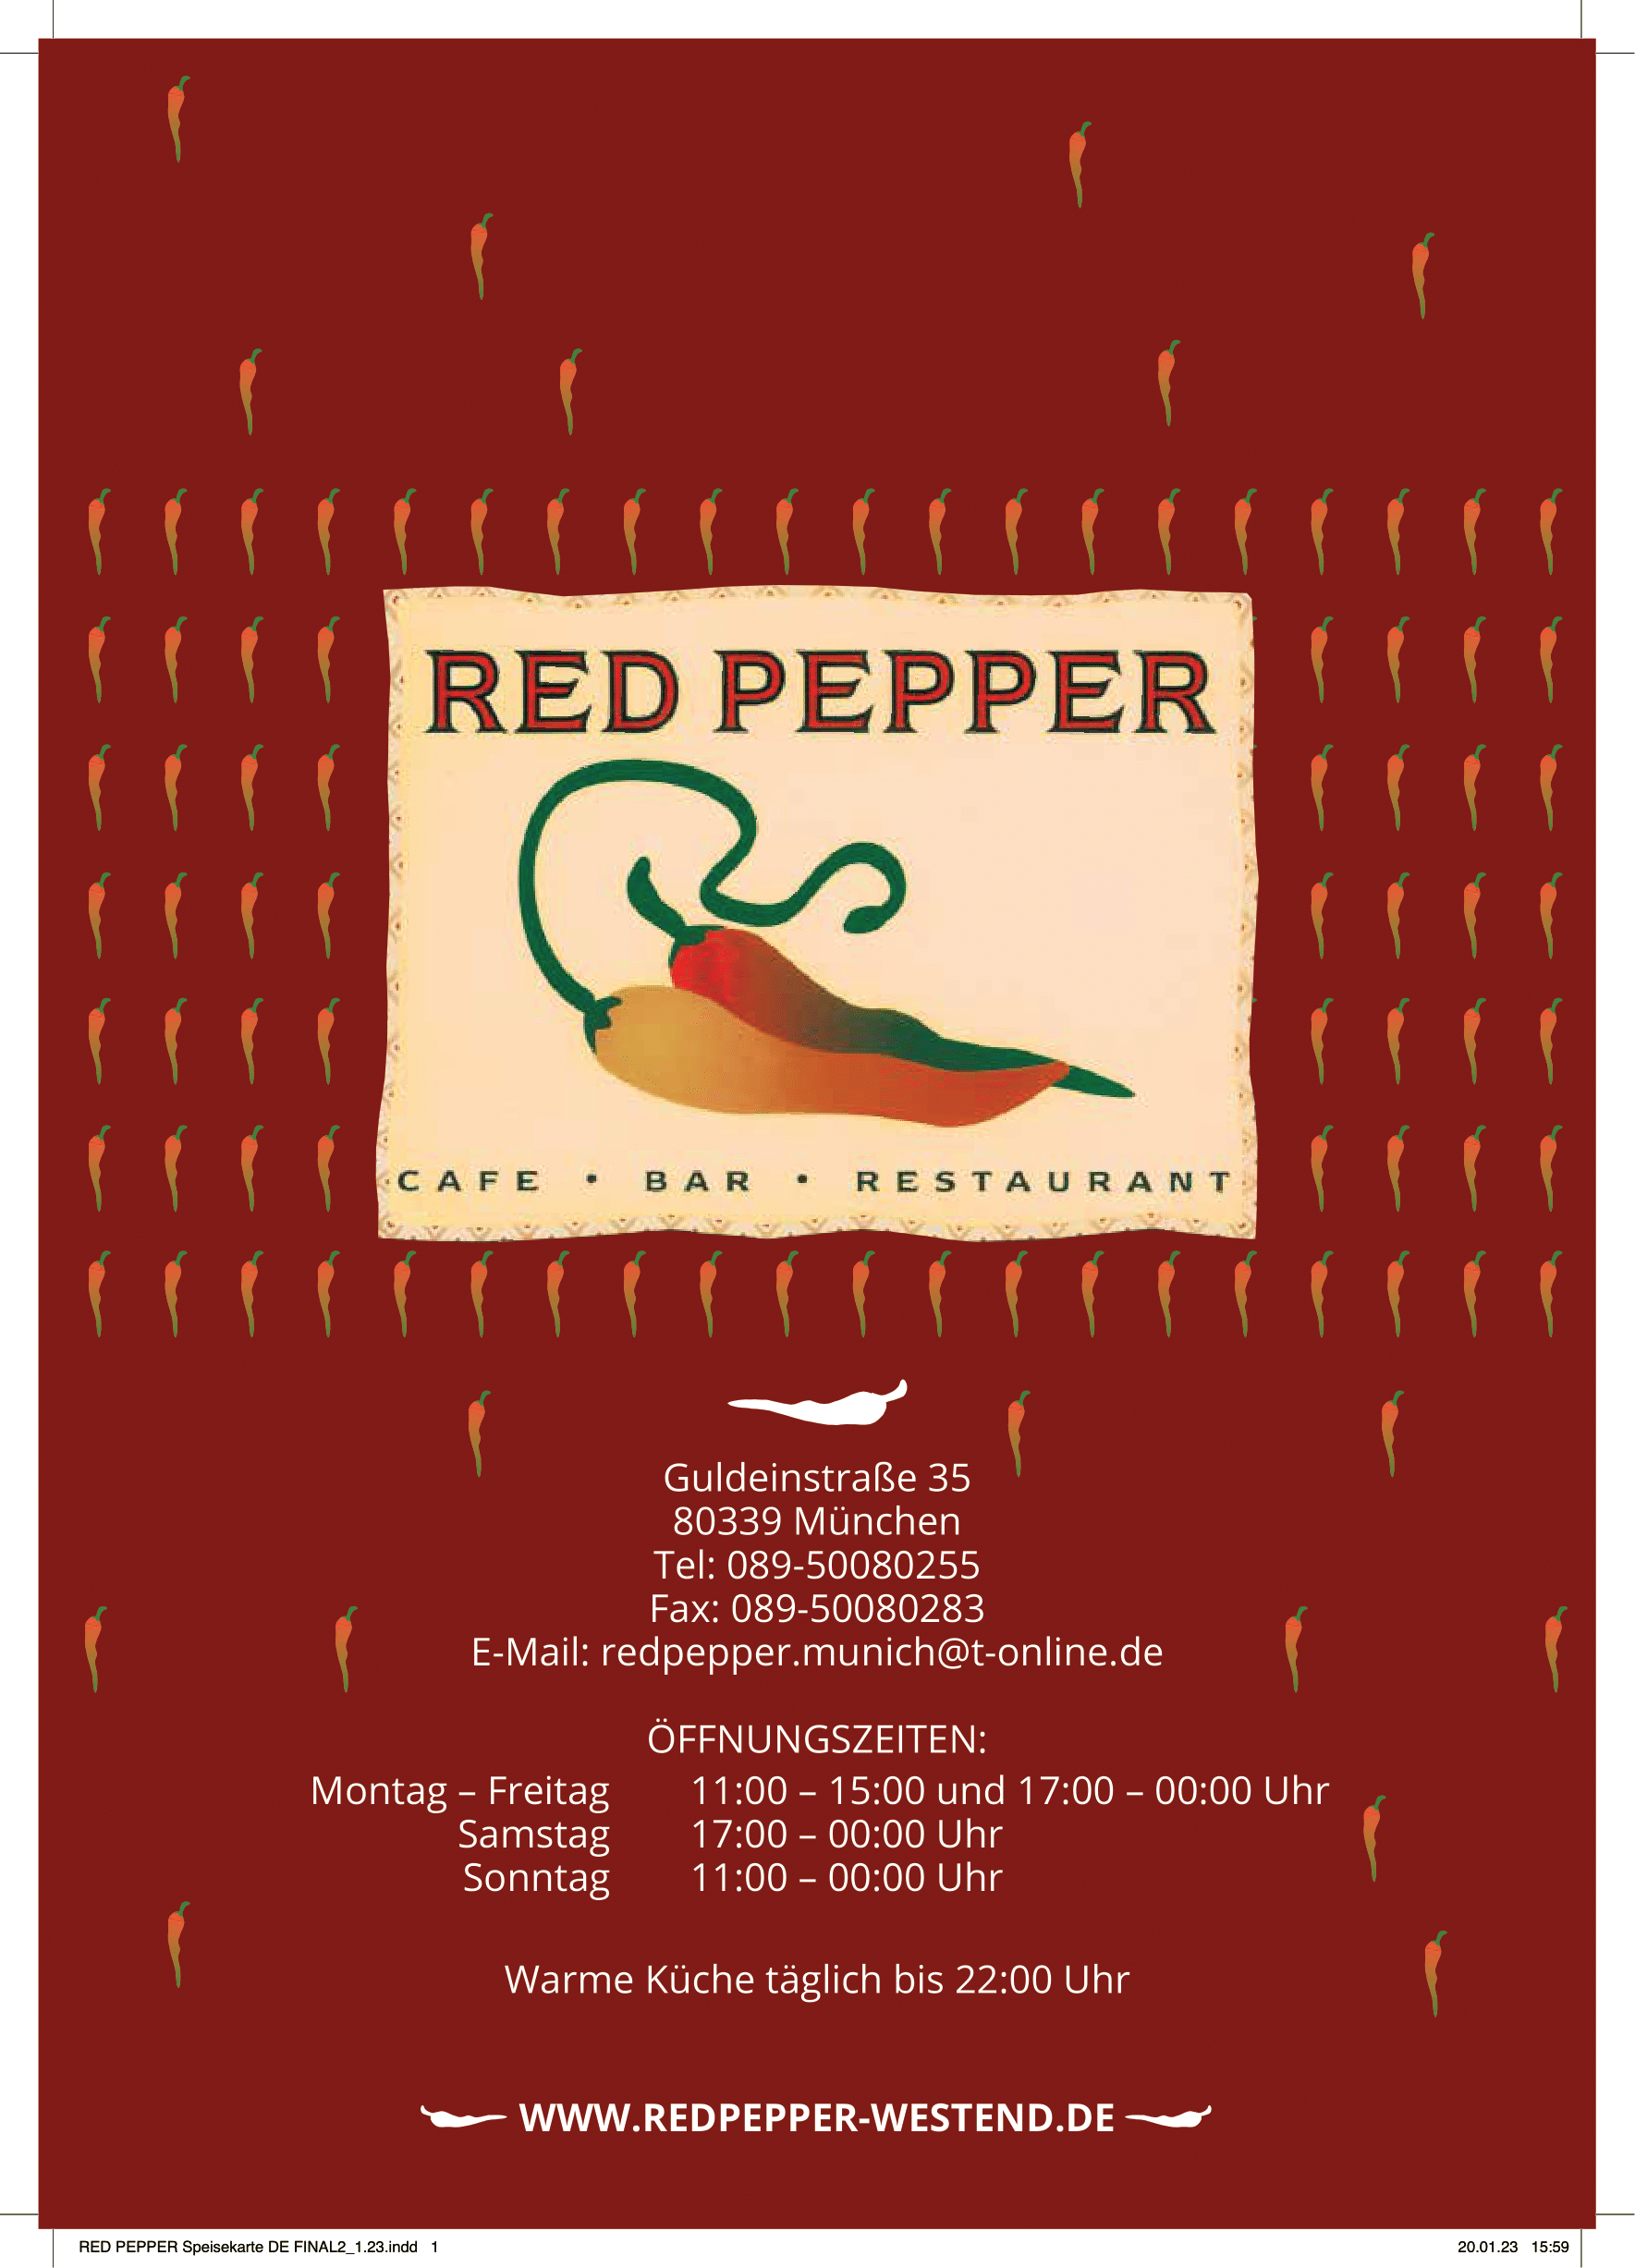 RED PEPPER Speisekarte DE3_1.23-1-12_1-1-1